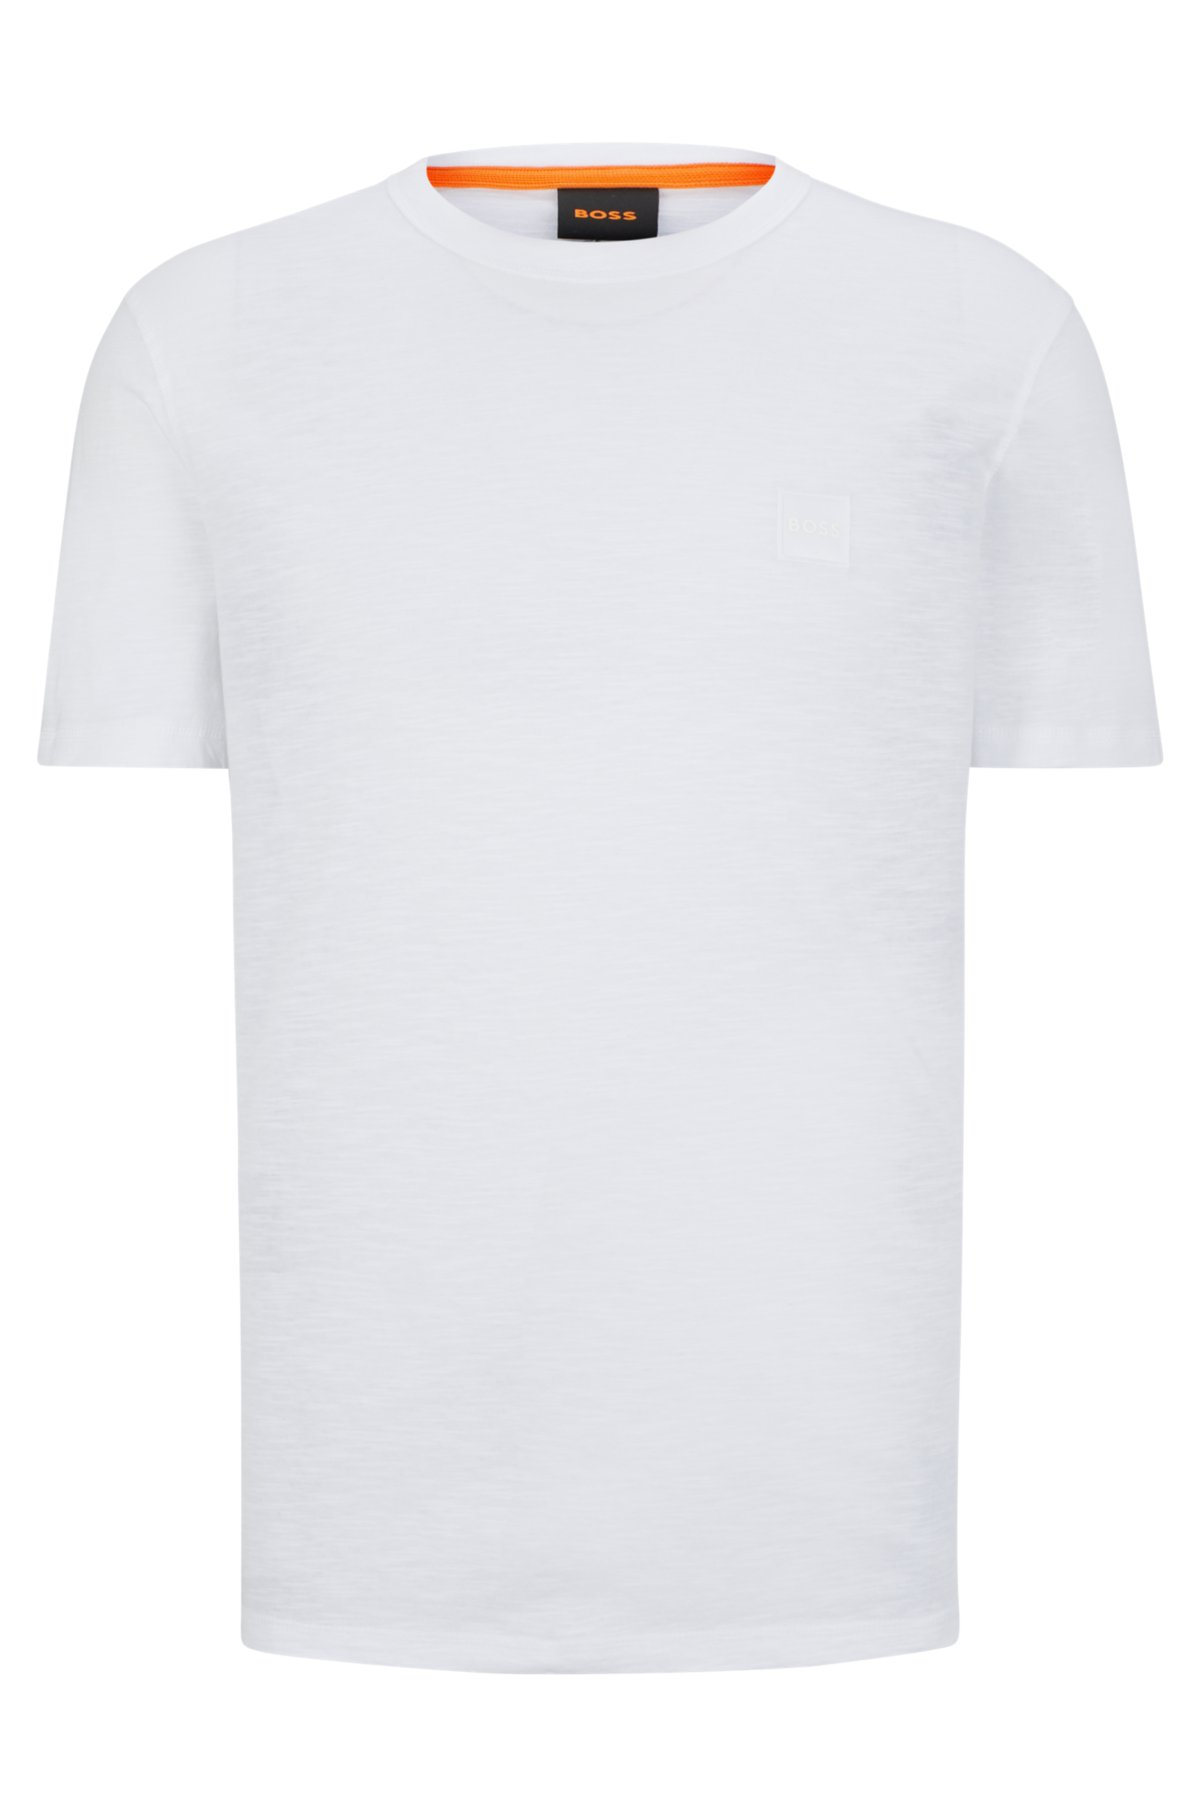 Las mejores ofertas en Camisetas regulares para hombre Louis Vuitton